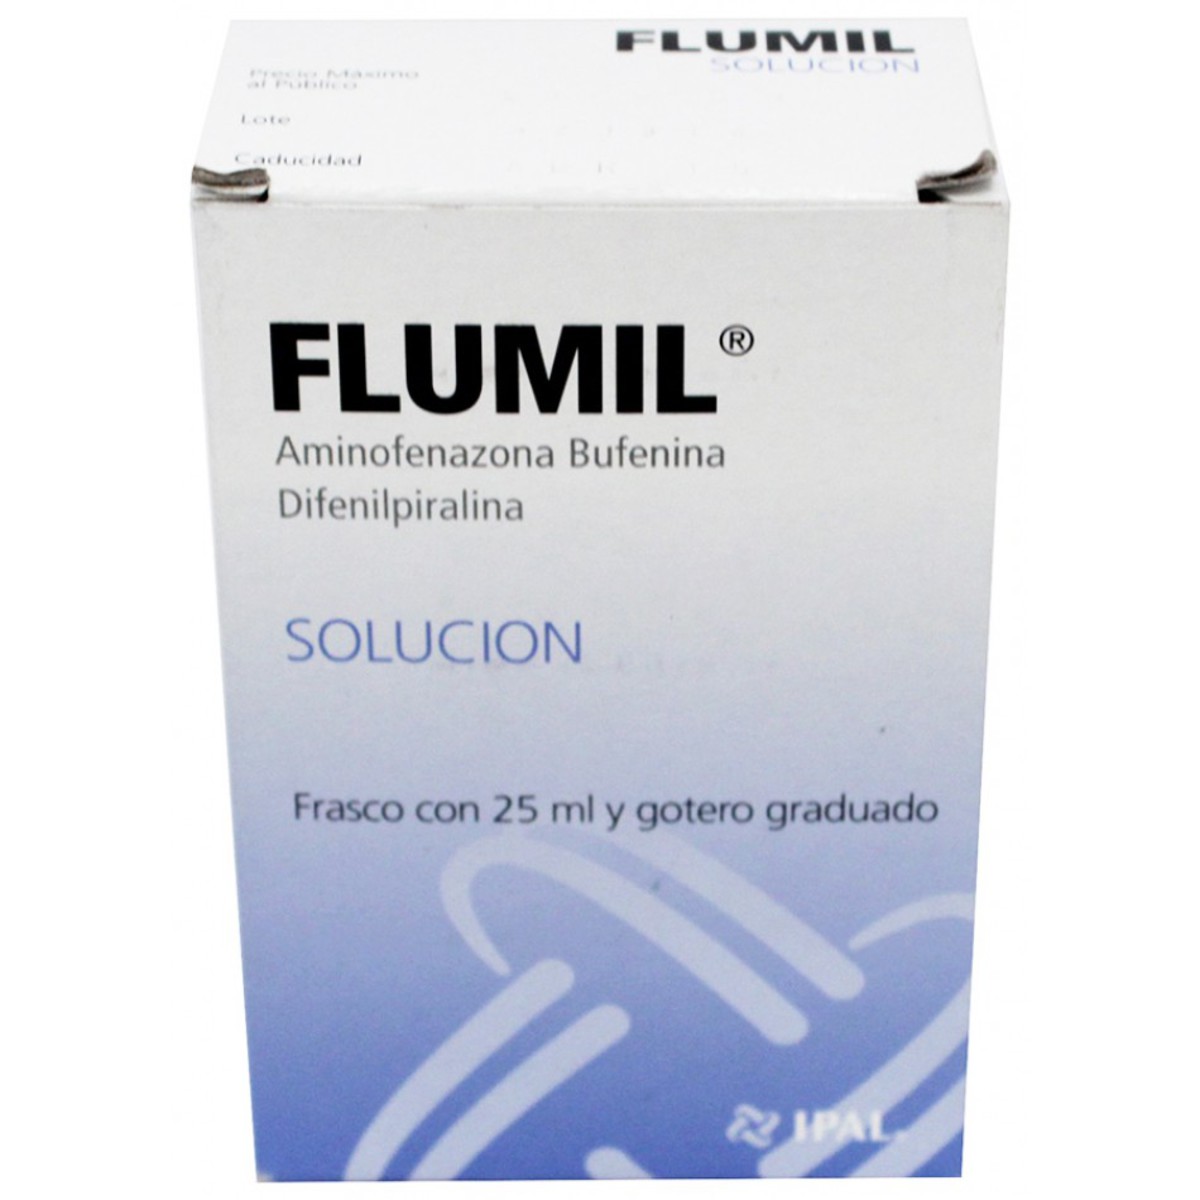 Flumil - image 0